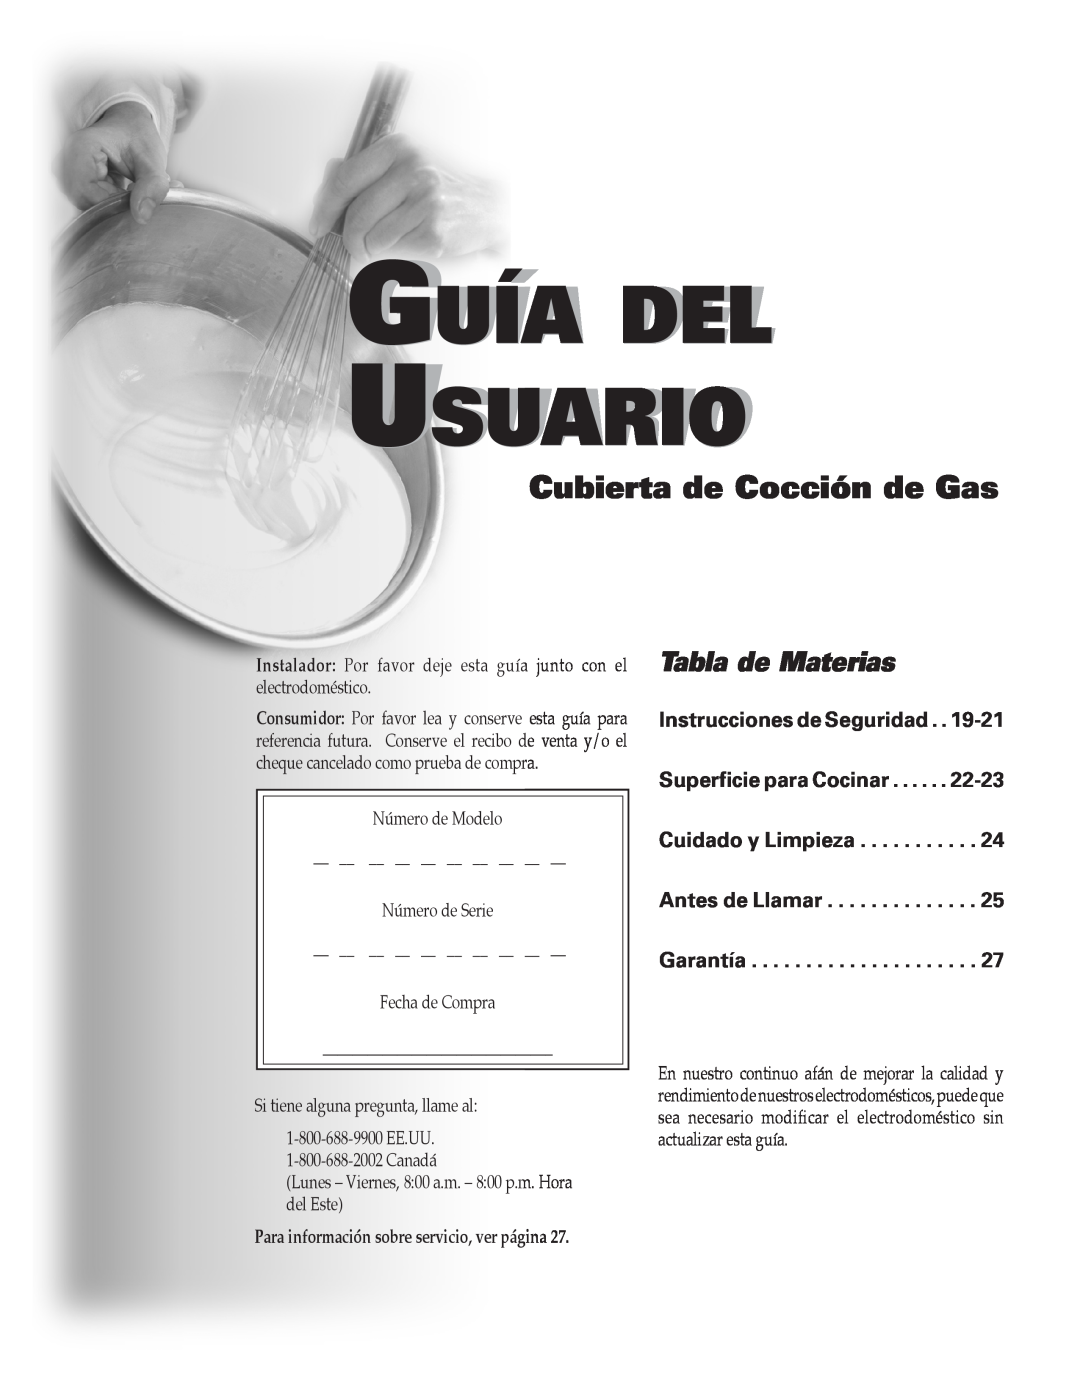 Maytag 8111P504-60 Guía Del Usuario, Cubierta de Cocción de Gas, Tabla de Materias, Antes de Llamar Garantía 